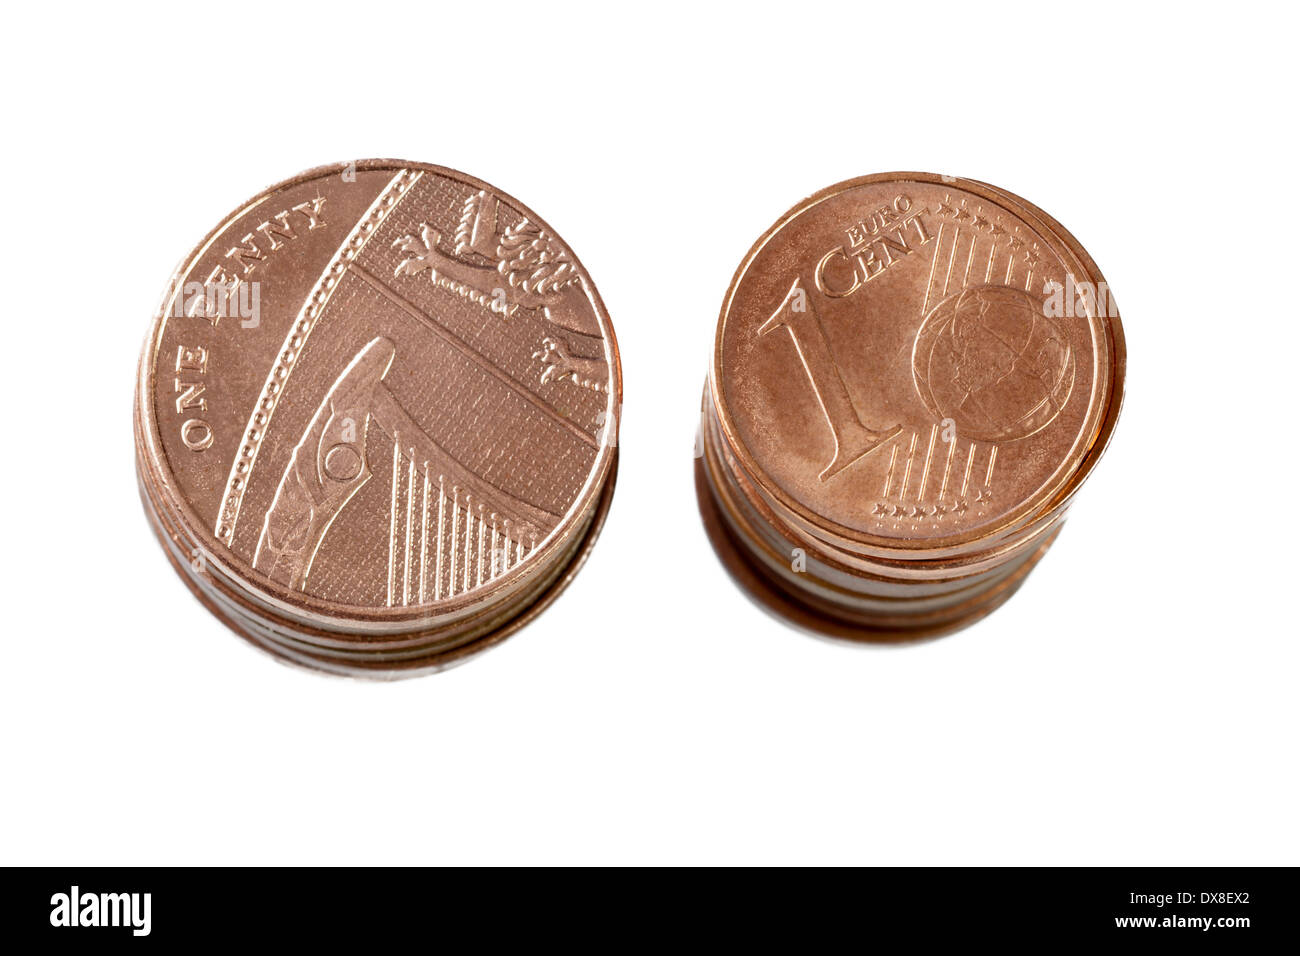 Britische Pfennige und Euro-Cent-Münzen Stockfoto